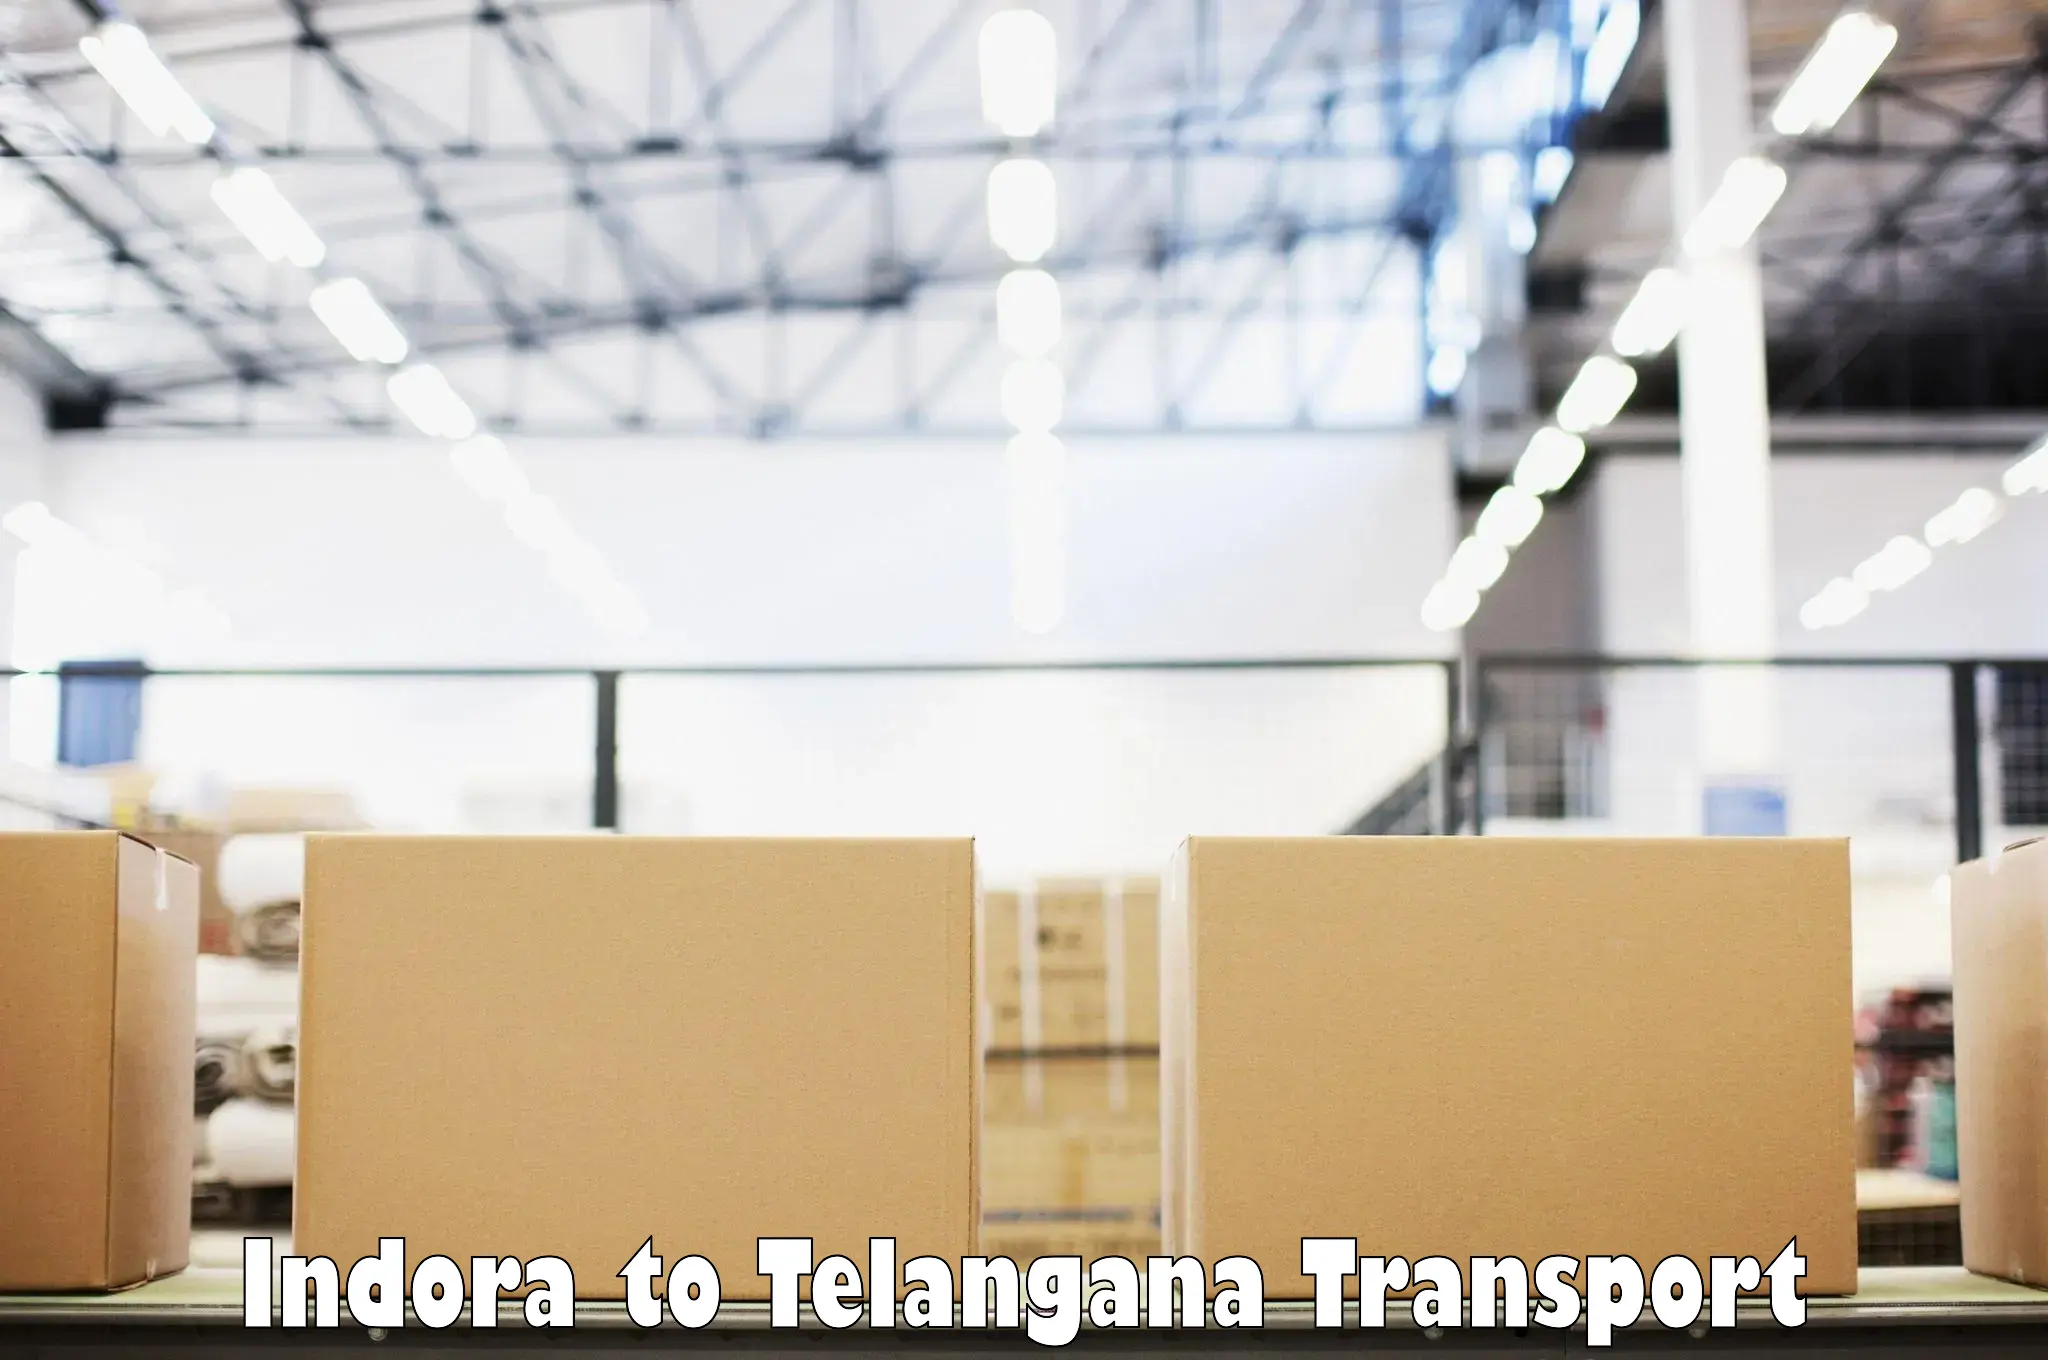 All India transport service Indora to Nellikuduru